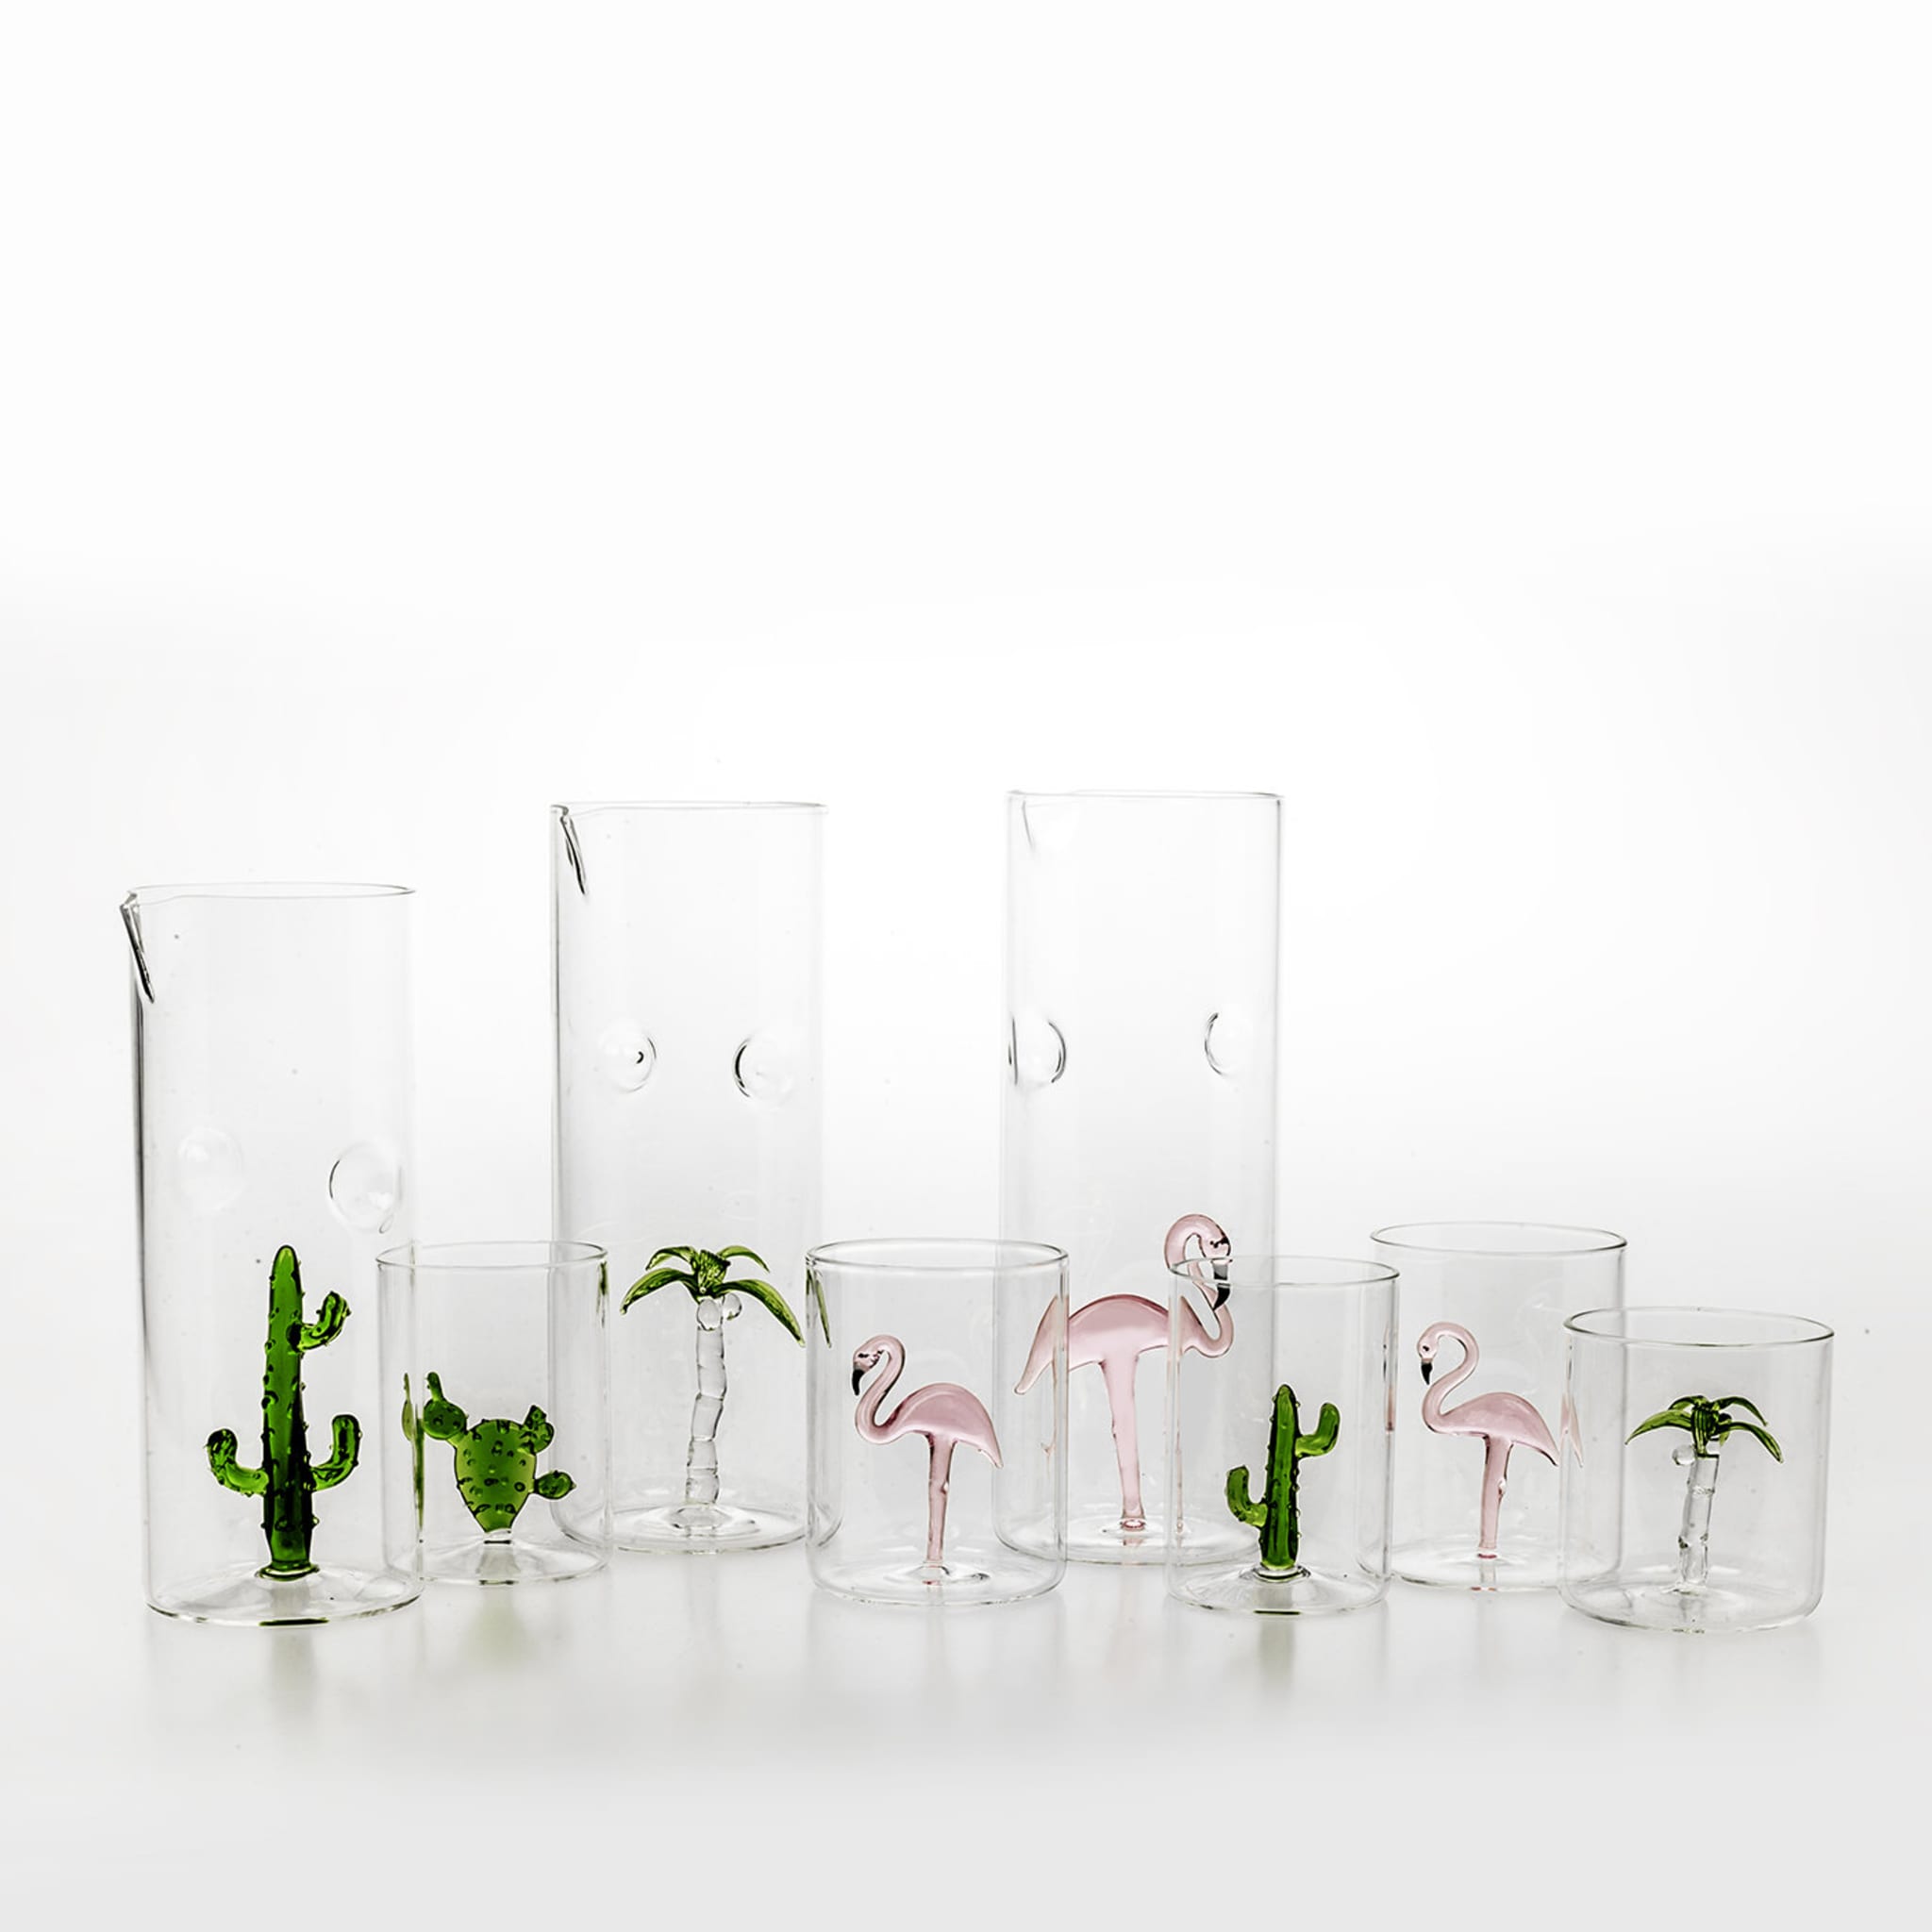 Fenicottero Set of 4 Glasses - Alternative view 1